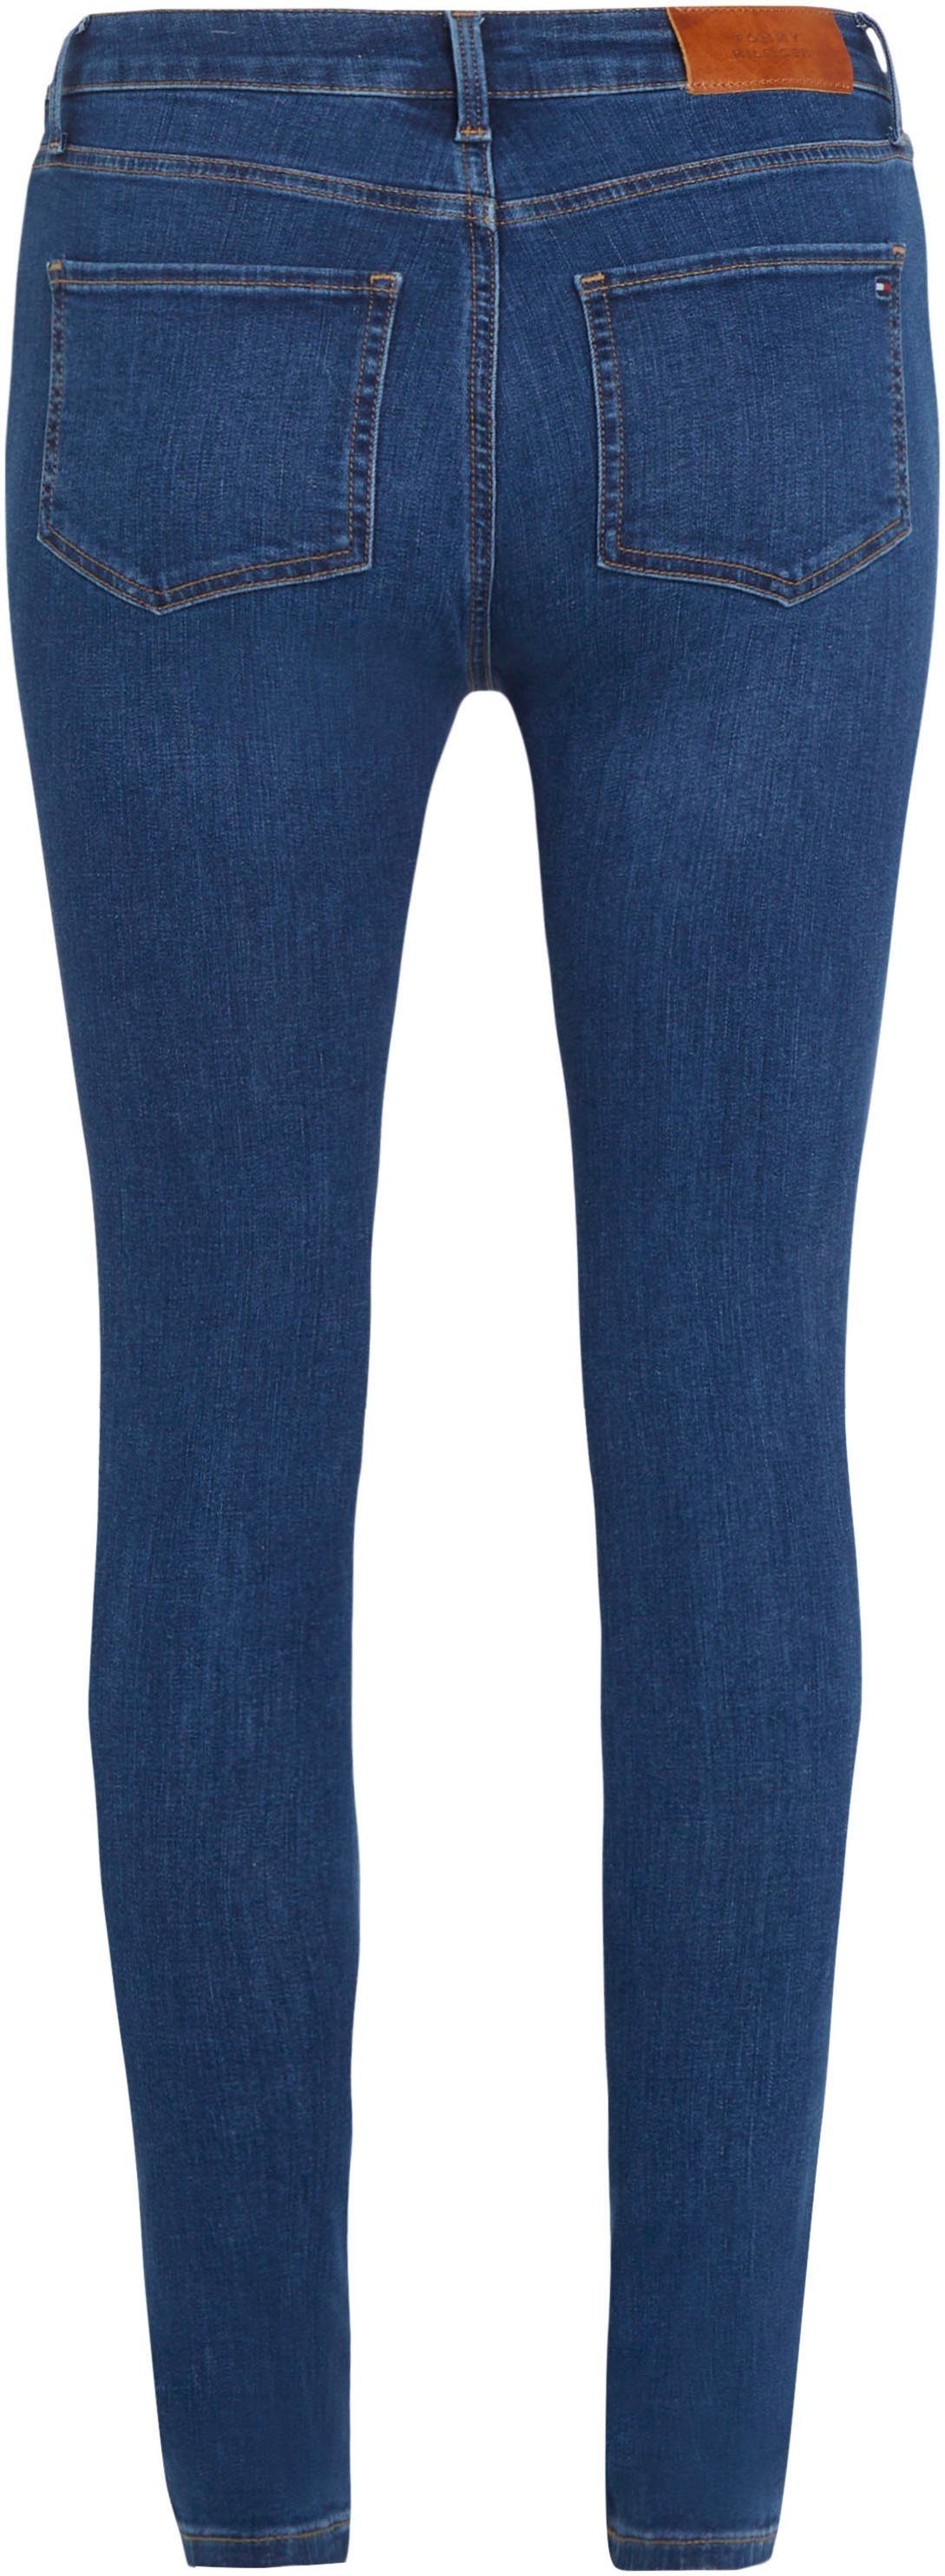 Skinny-fit-Jeans Tommy KAI in HW Waschung TH SKINNY HARLEM blauer FLEX U Hilfiger